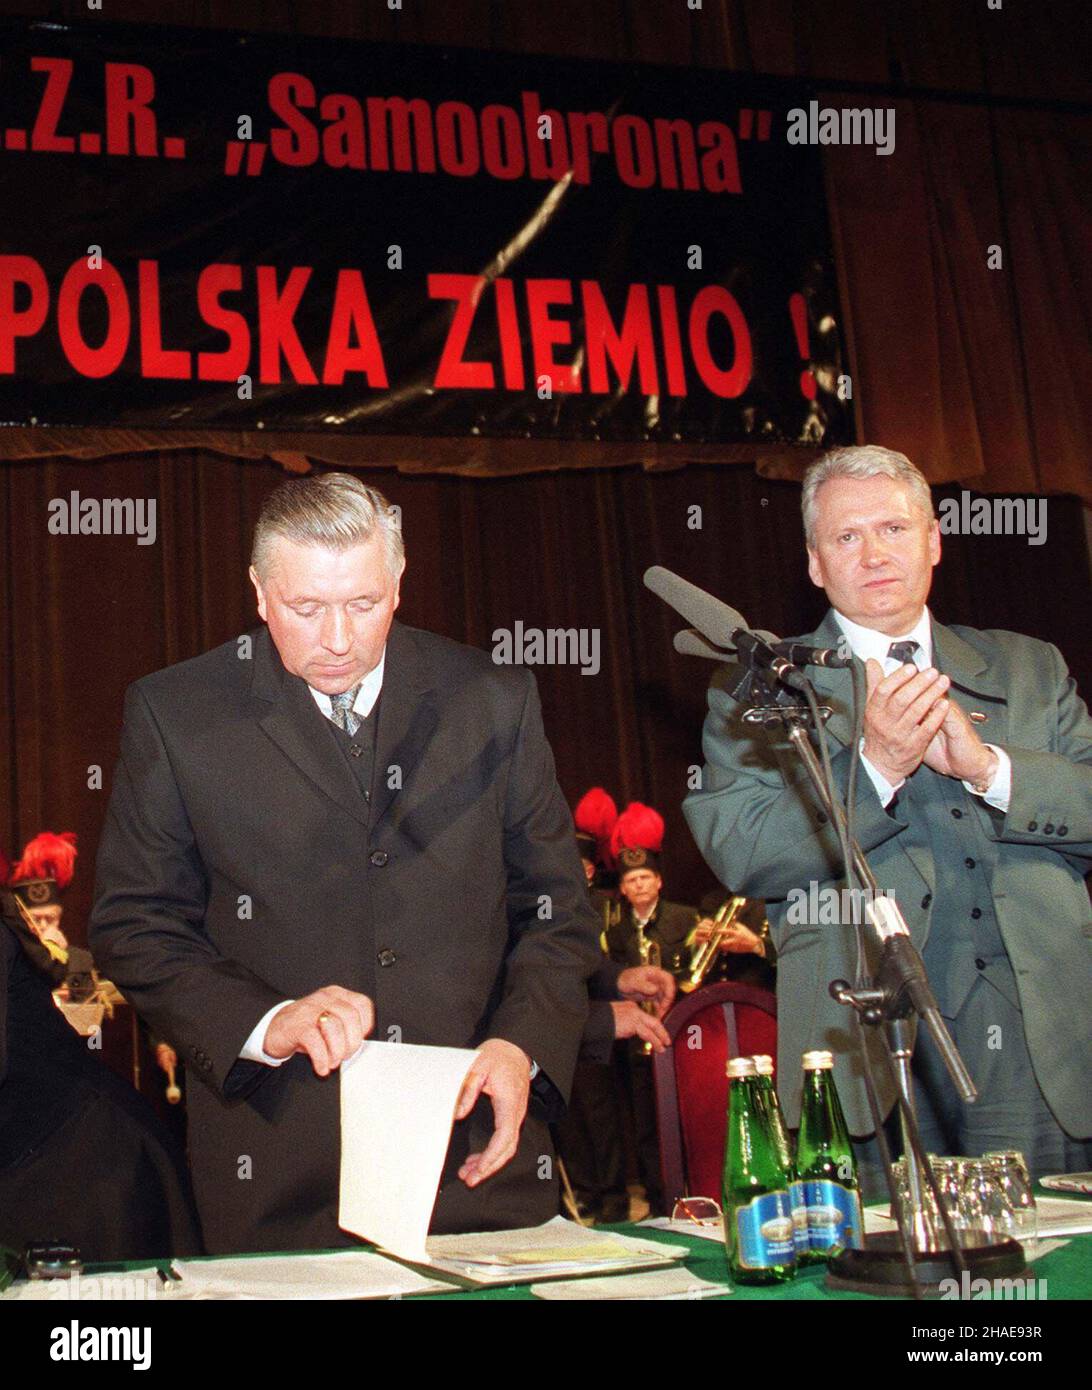 Warszawa, 05.05.1999. III Krajowy Zjazd Zwi¹zku  Zawodowego Rolnictwa 'Samoobrona' w Warszawie. N/z: przewodnicz¹cy Andrzej Lepper (L) oraz  cz³onek prezydium Czes³aw Kosik (P). (kru) PAP/Adam Urbanek      Warsaw, 05.05.1999. III National Congress of Polish Trade Union of Agriculture Self-Defense (Samoobrona) in Warsaw. Pictured: the leader of Samoobrona Andrzej Lepper (L) and member of union Czeslaw Kosik (R). (kru) PAP/Adam Urbanek Stock Photo